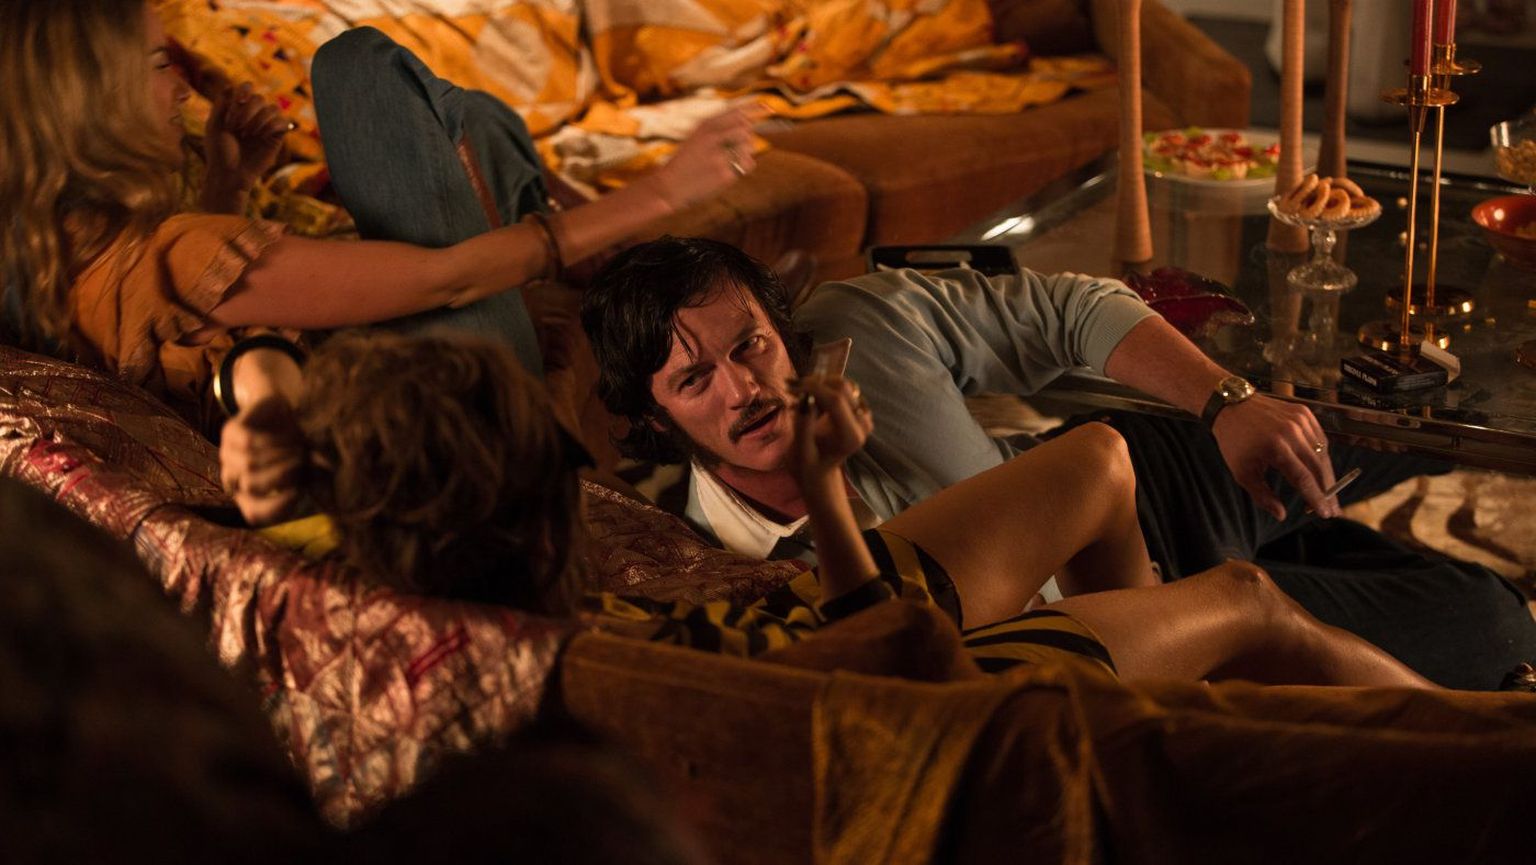 Õige pea kisub Wilder (Luke Evans) end hedonistlikust püherdamisest välja, et täiel rinnal revolutsioonile pühenduda.